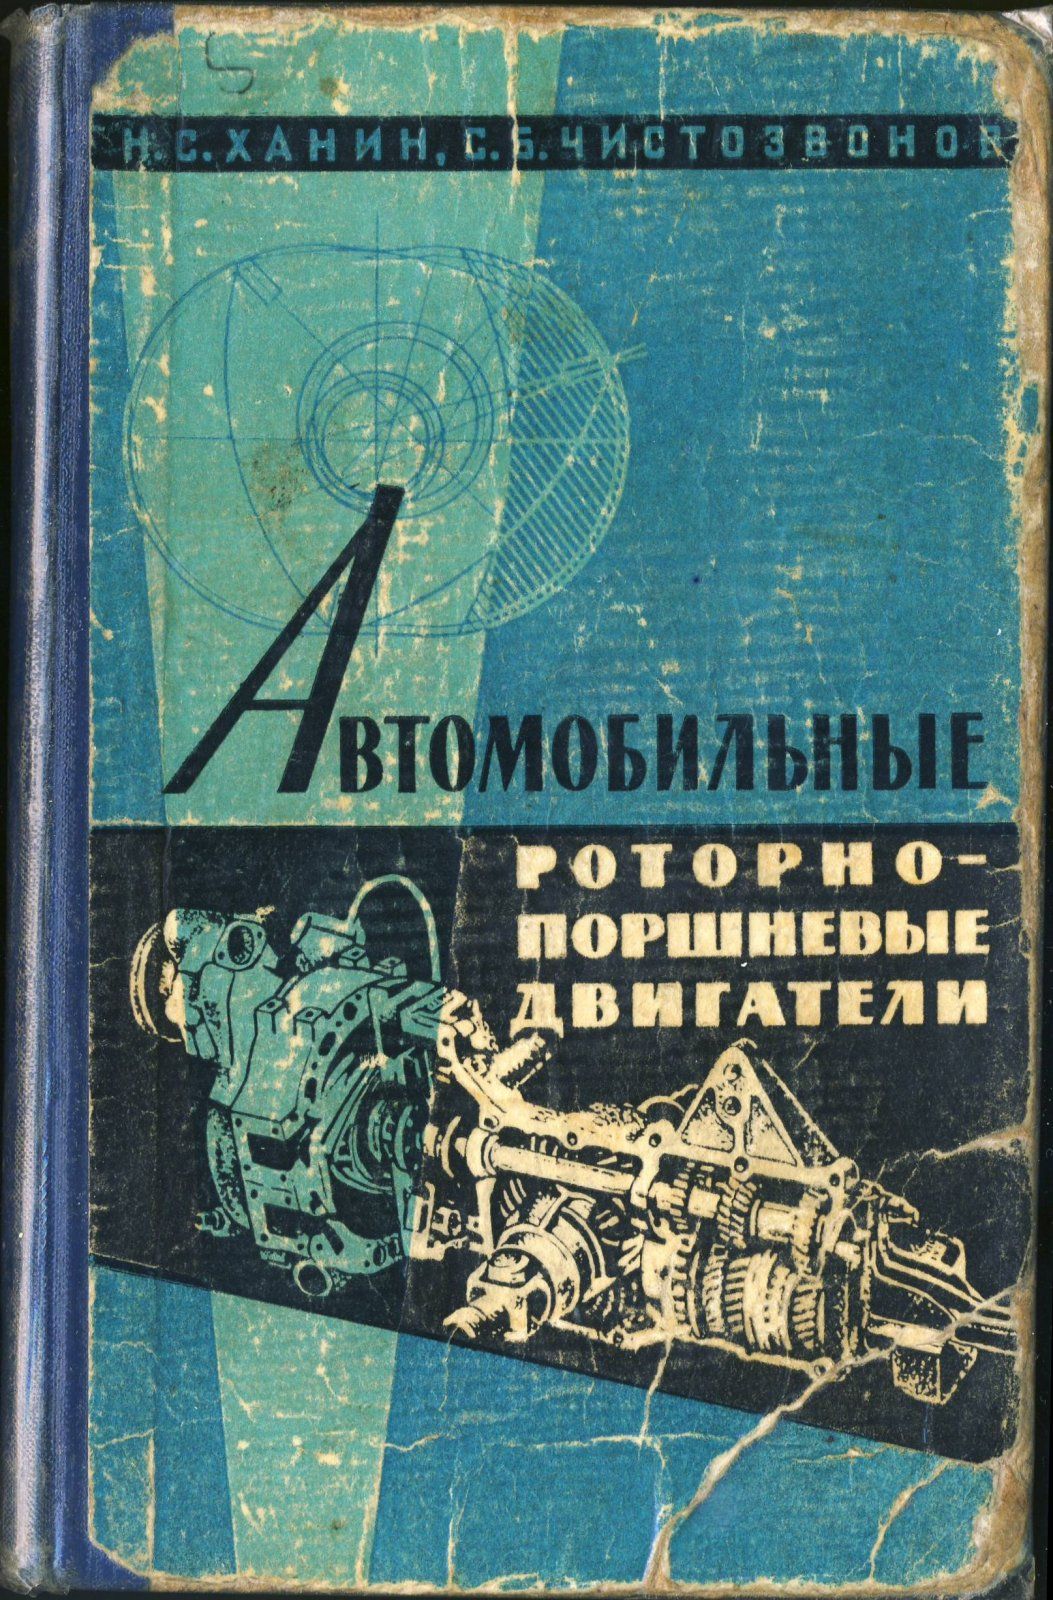 Ханин Н.С., Чистозвонов С.Б. Автомобильные роторно-поршневые двигатели. 1964.jpg